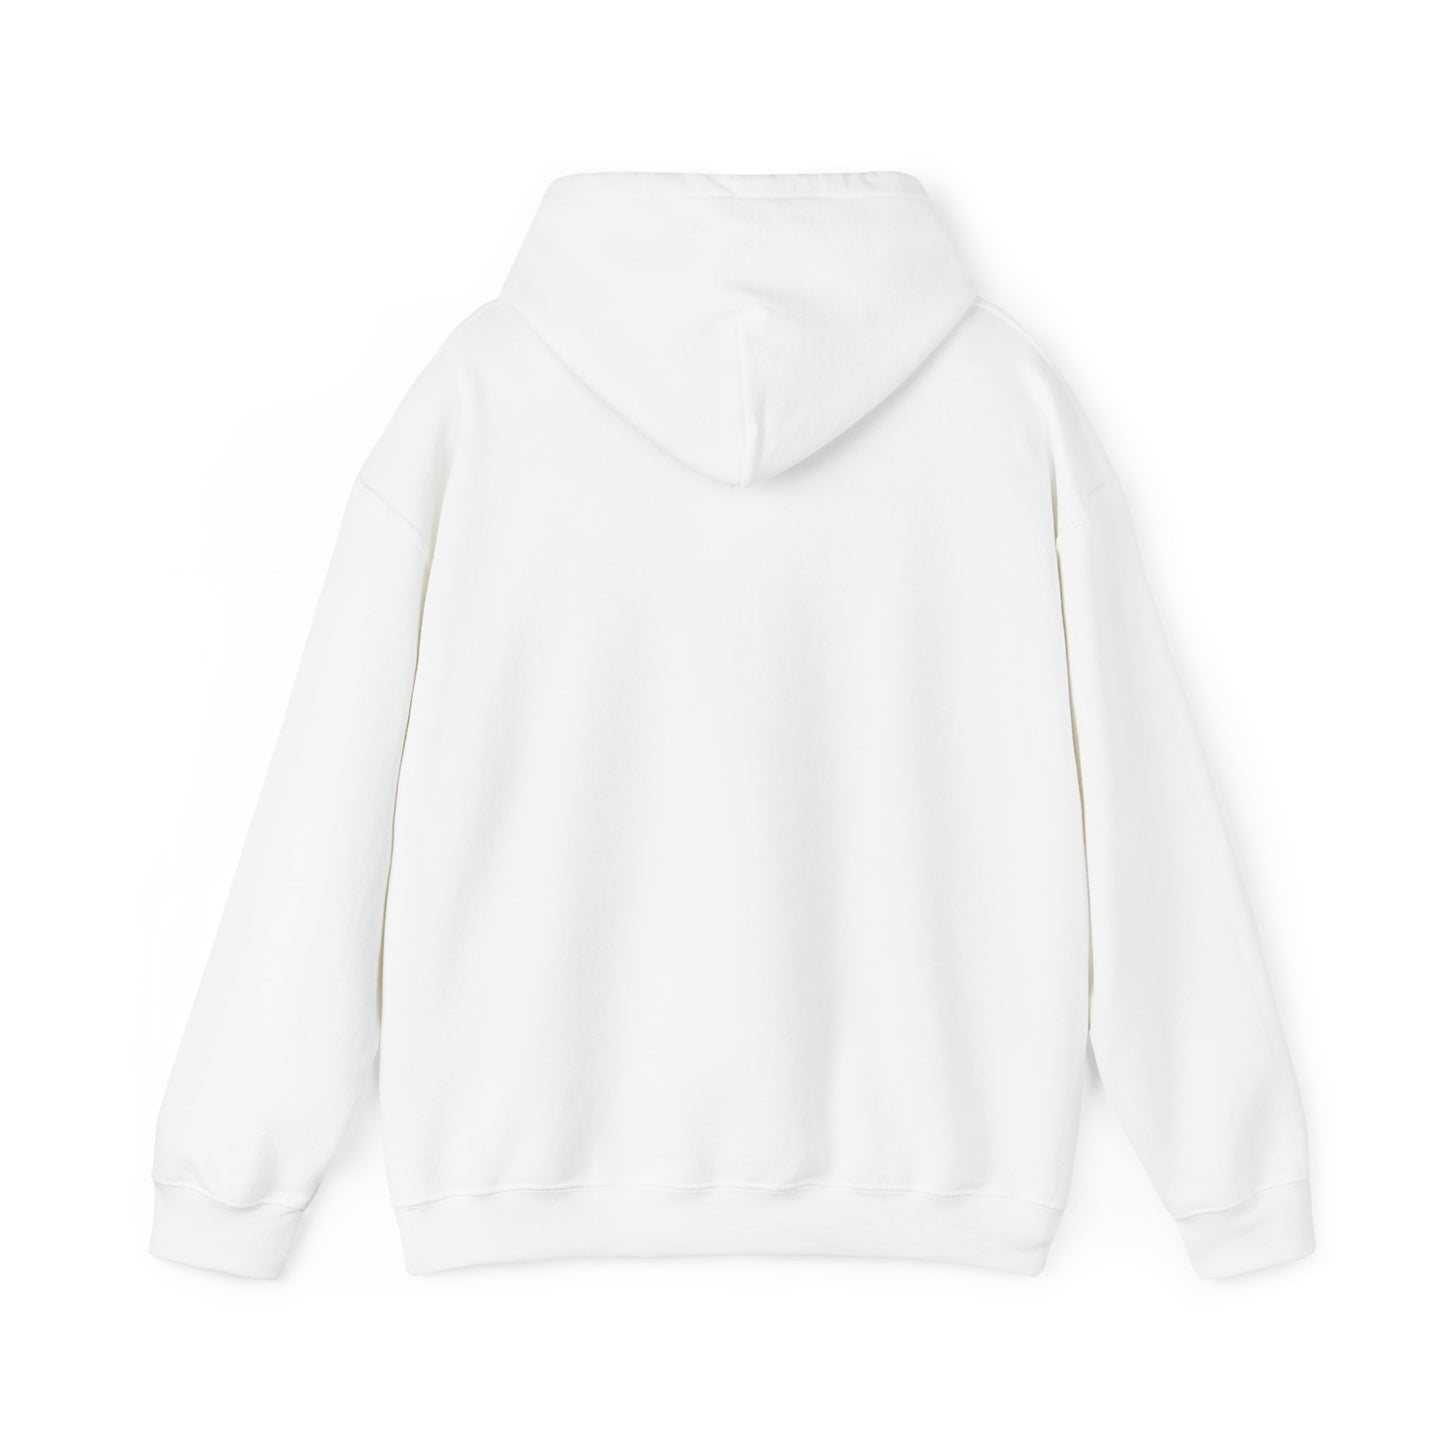 SHEDDIN Unisex Heavy Blend™ Hooded Sweatshirt